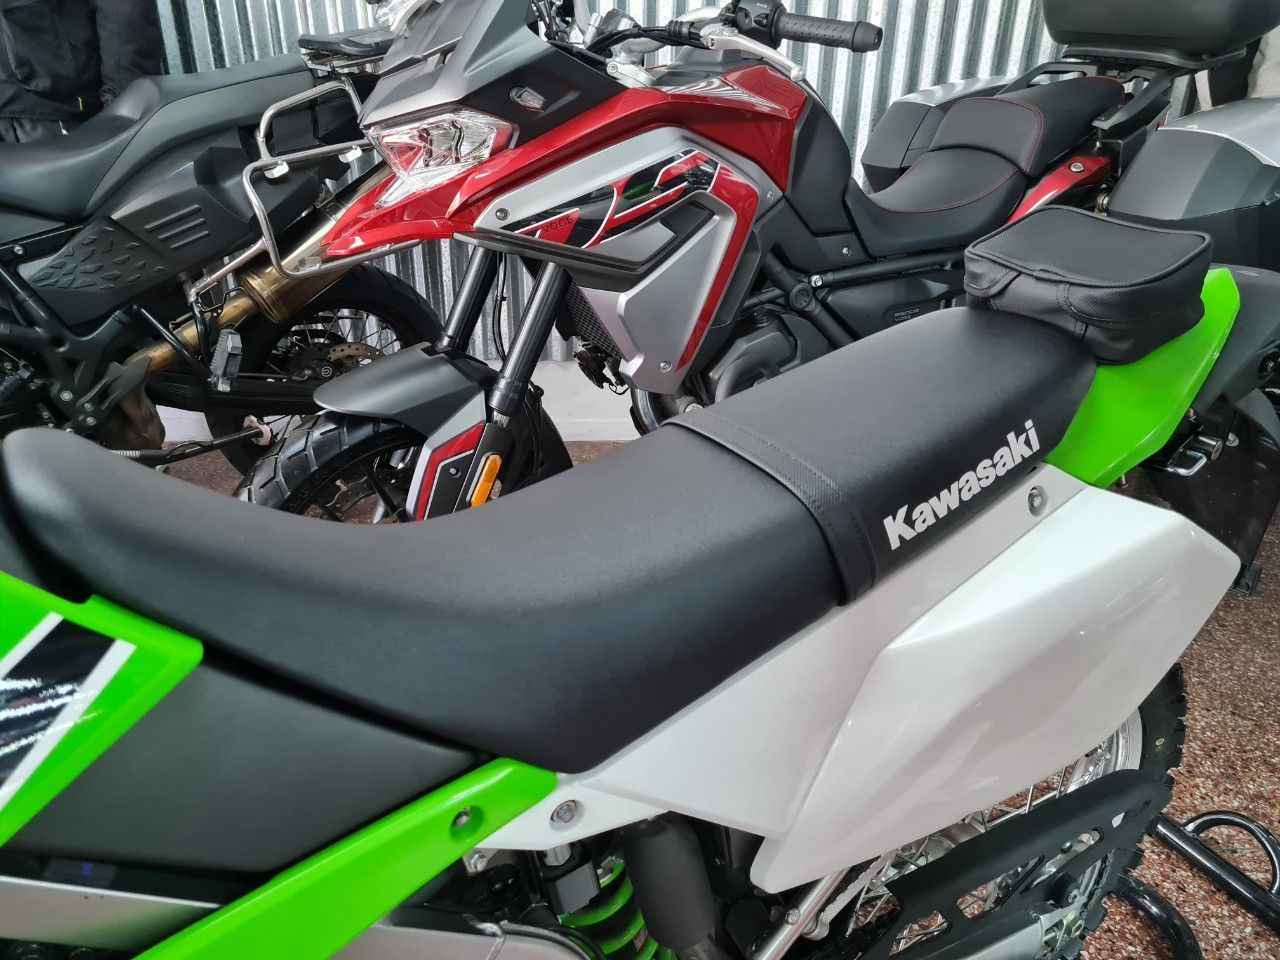 Kawasaki KLX Nueva en Mendoza, deRuedas